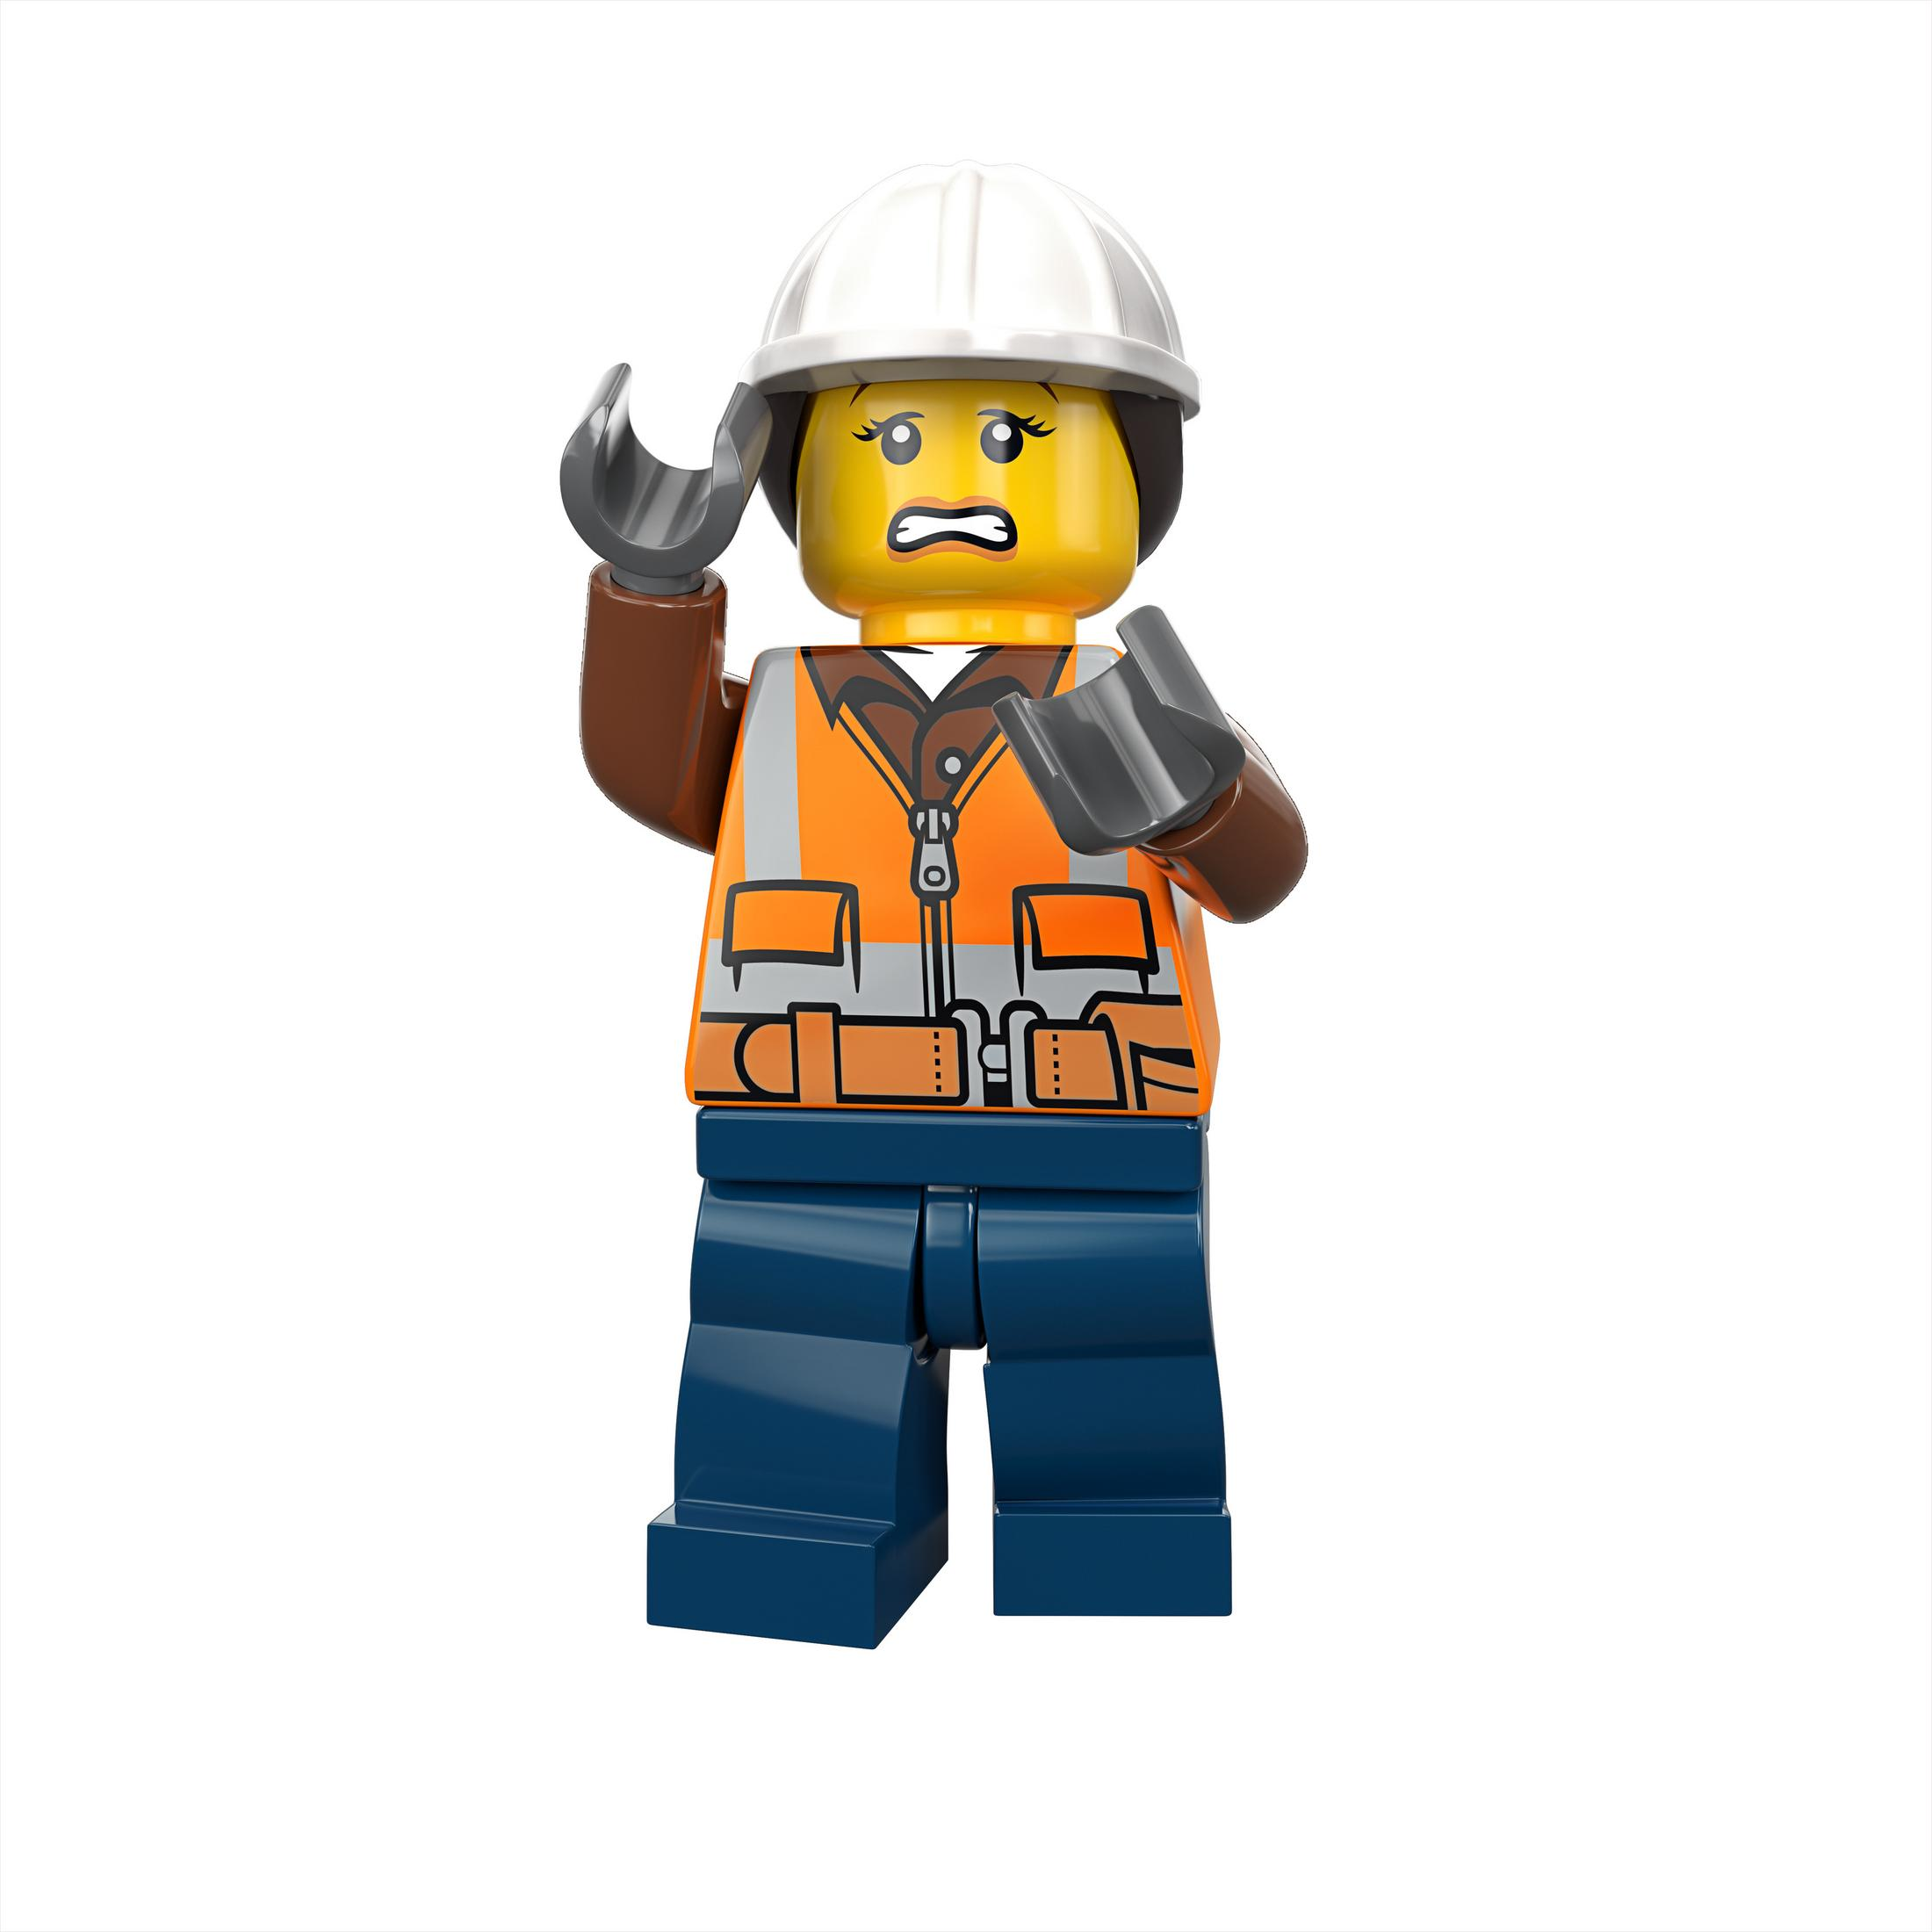 Bausatz, IN Mehrfarbig 60216 FEUERWEHR LEGO DER STADT